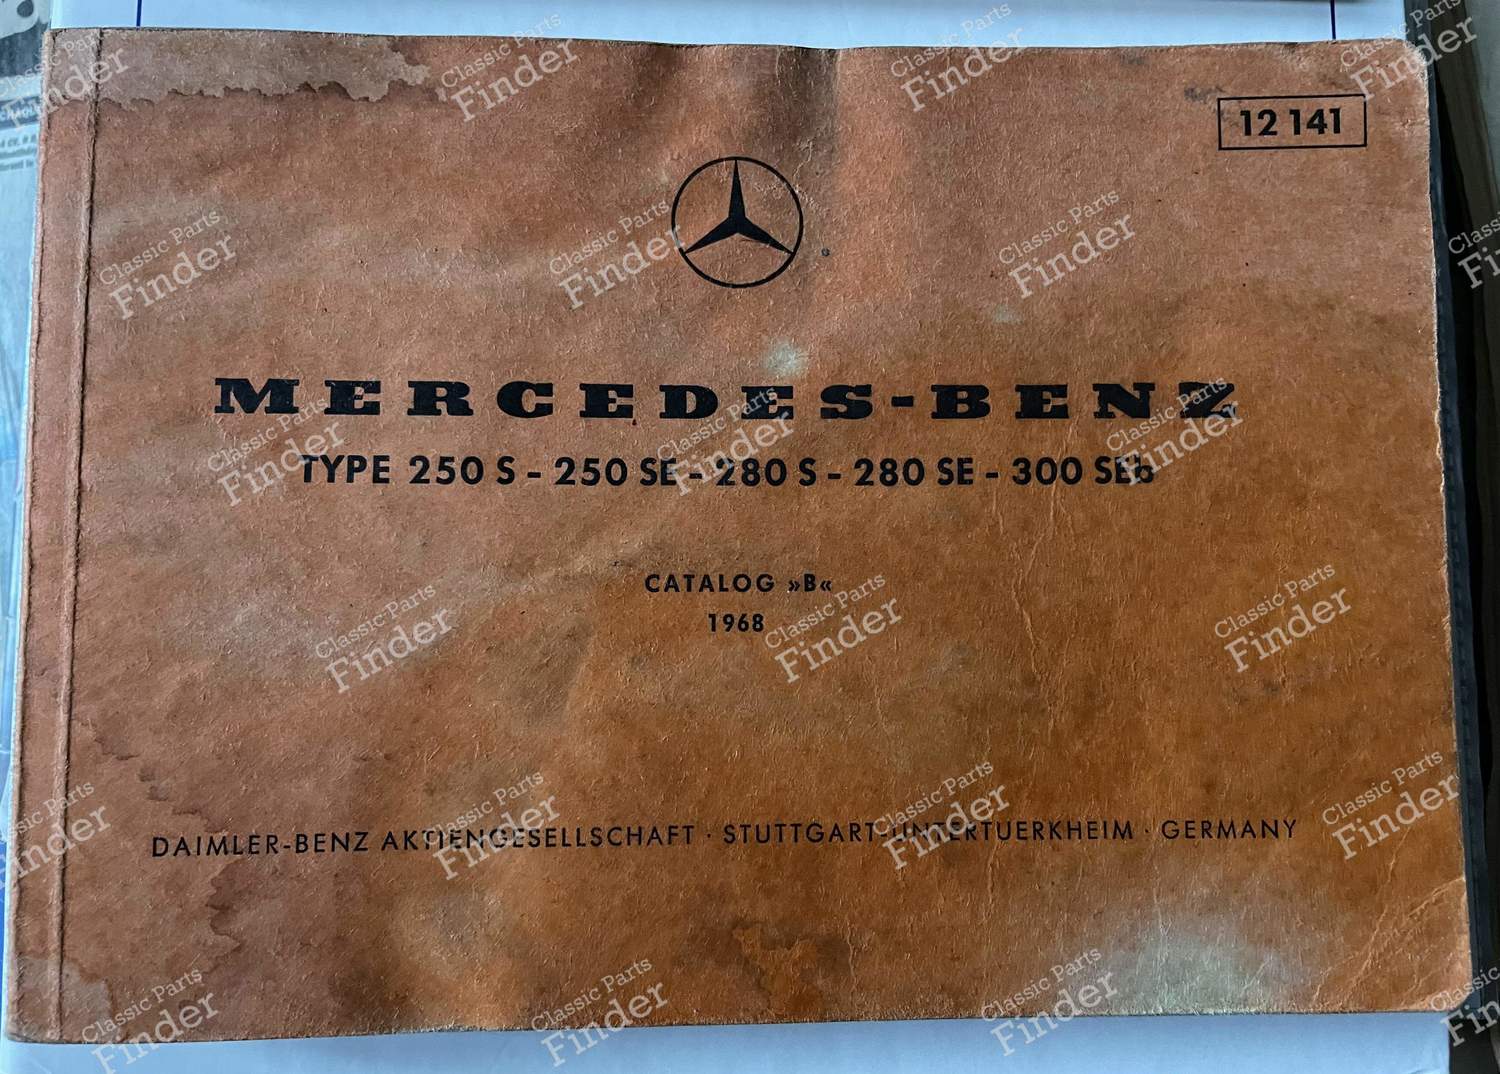 Handbuch für Ersatzteile - MERCEDES BENZ W108 / W109 - Ref. 12141